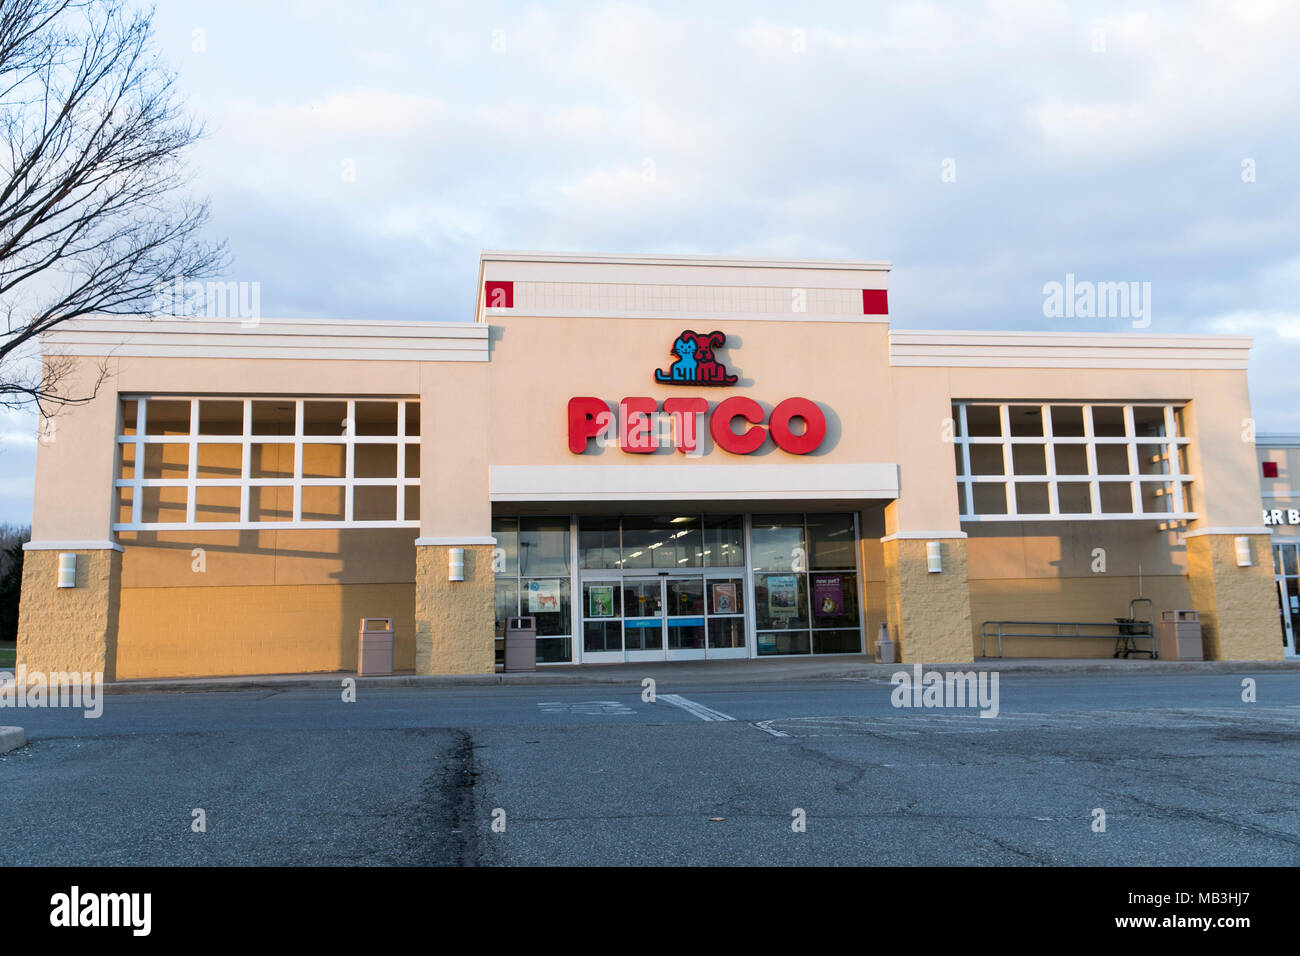 Un logo Petco vu sur un magasin de détail/de Hagerstown, Maryland le 5 avril 2018. Banque D'Images